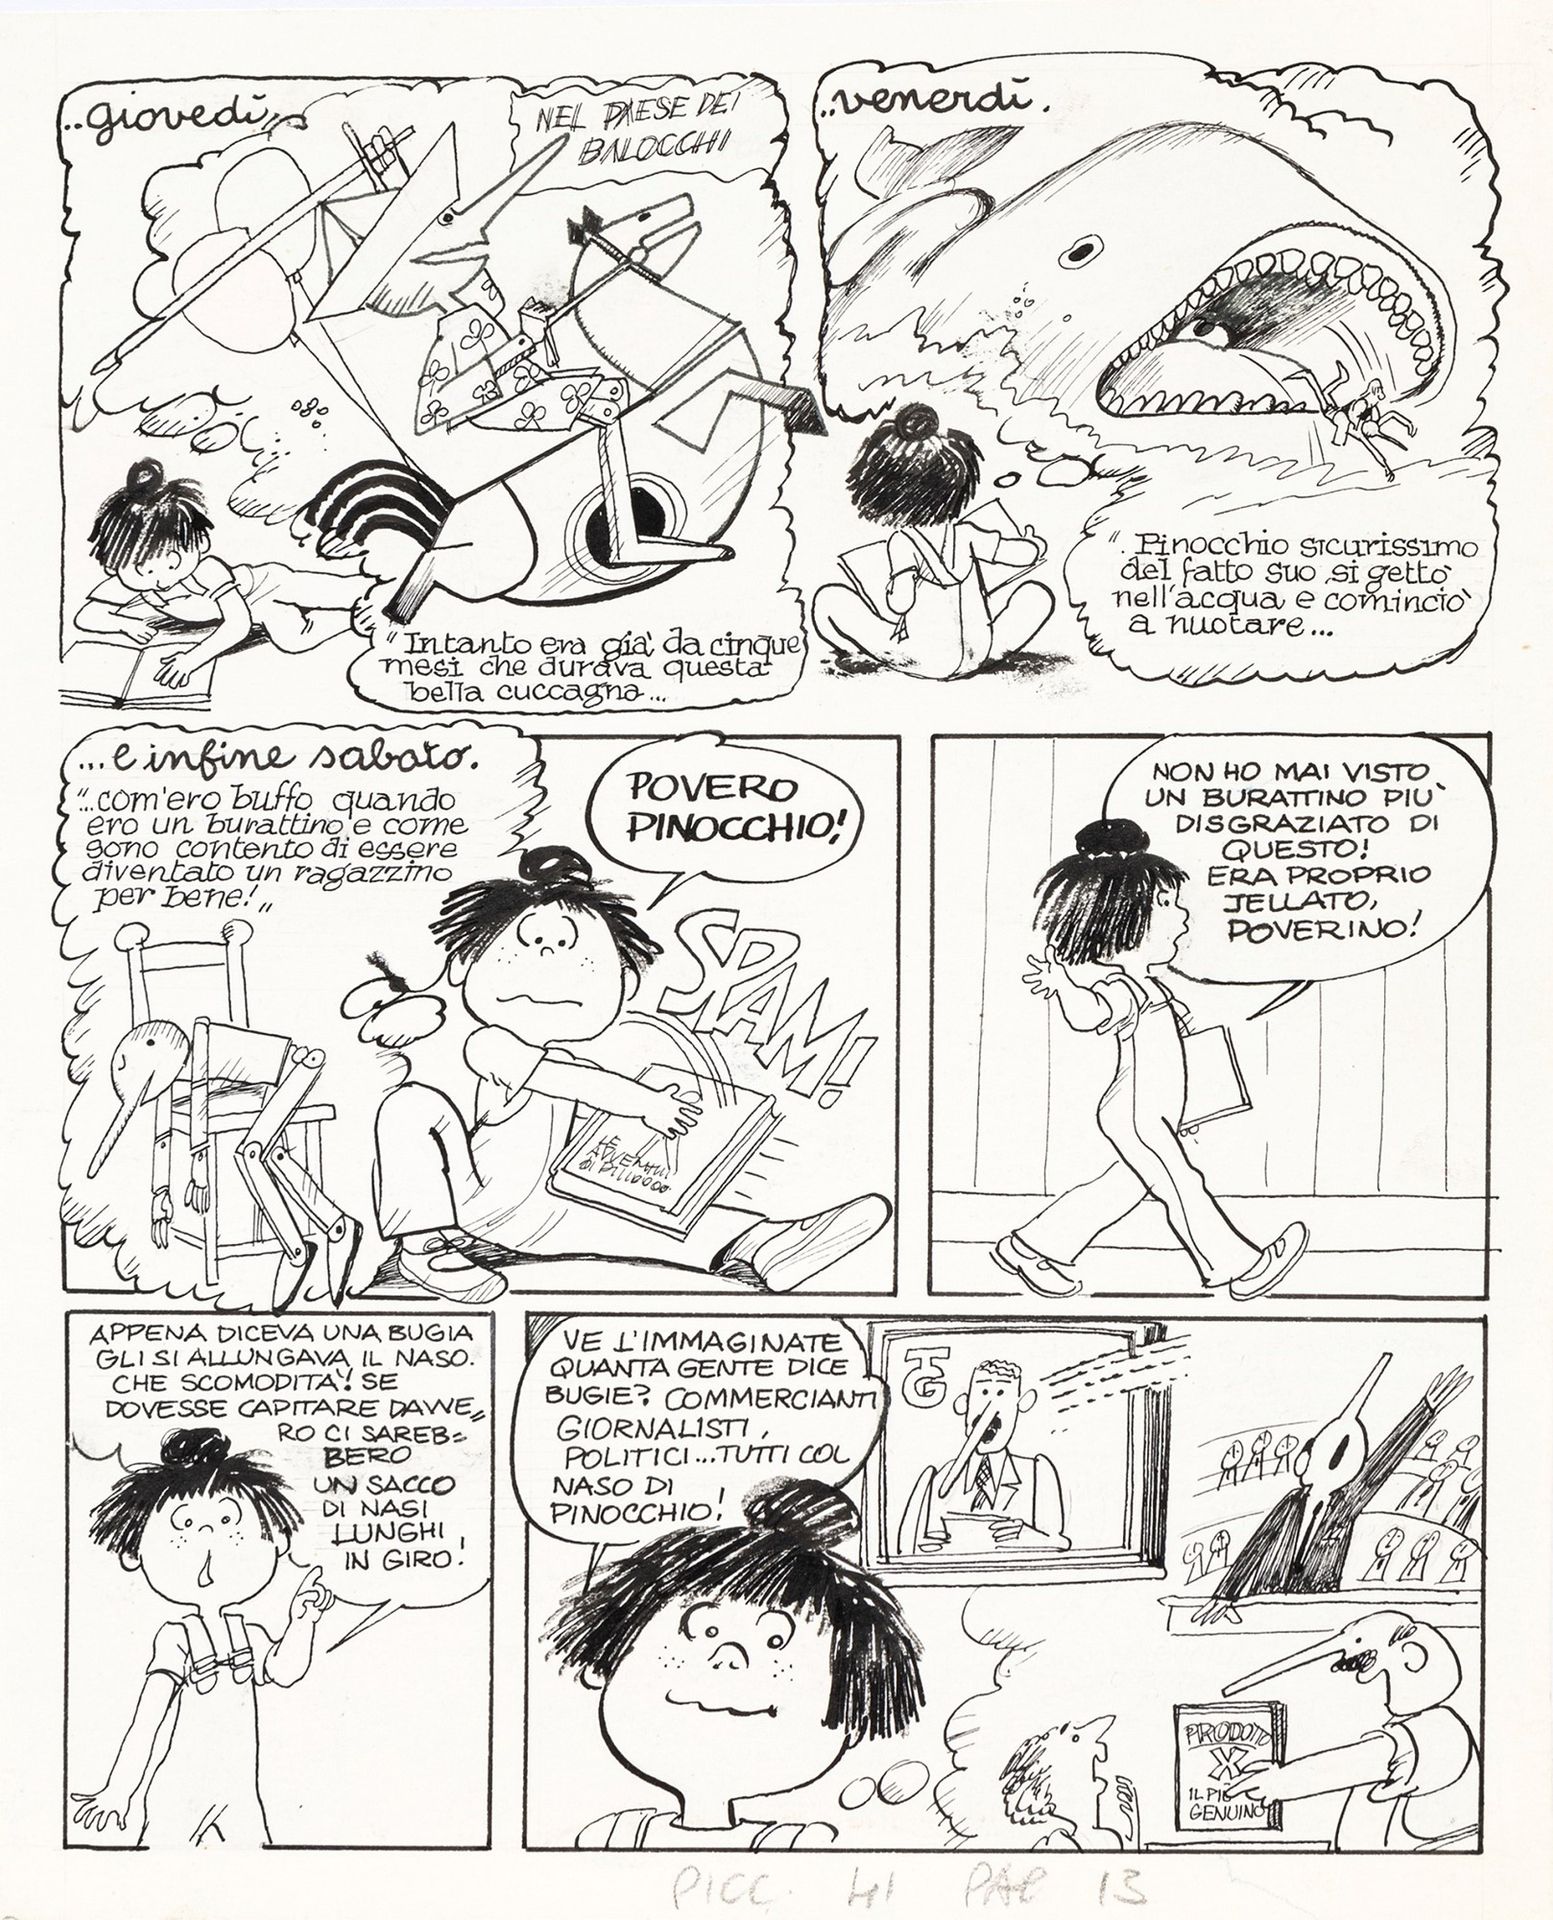 Grazia Nidasio Stefi: leggere Pinocchio, 1981

Bleistift und Tinte auf dünnem Ka&hellip;